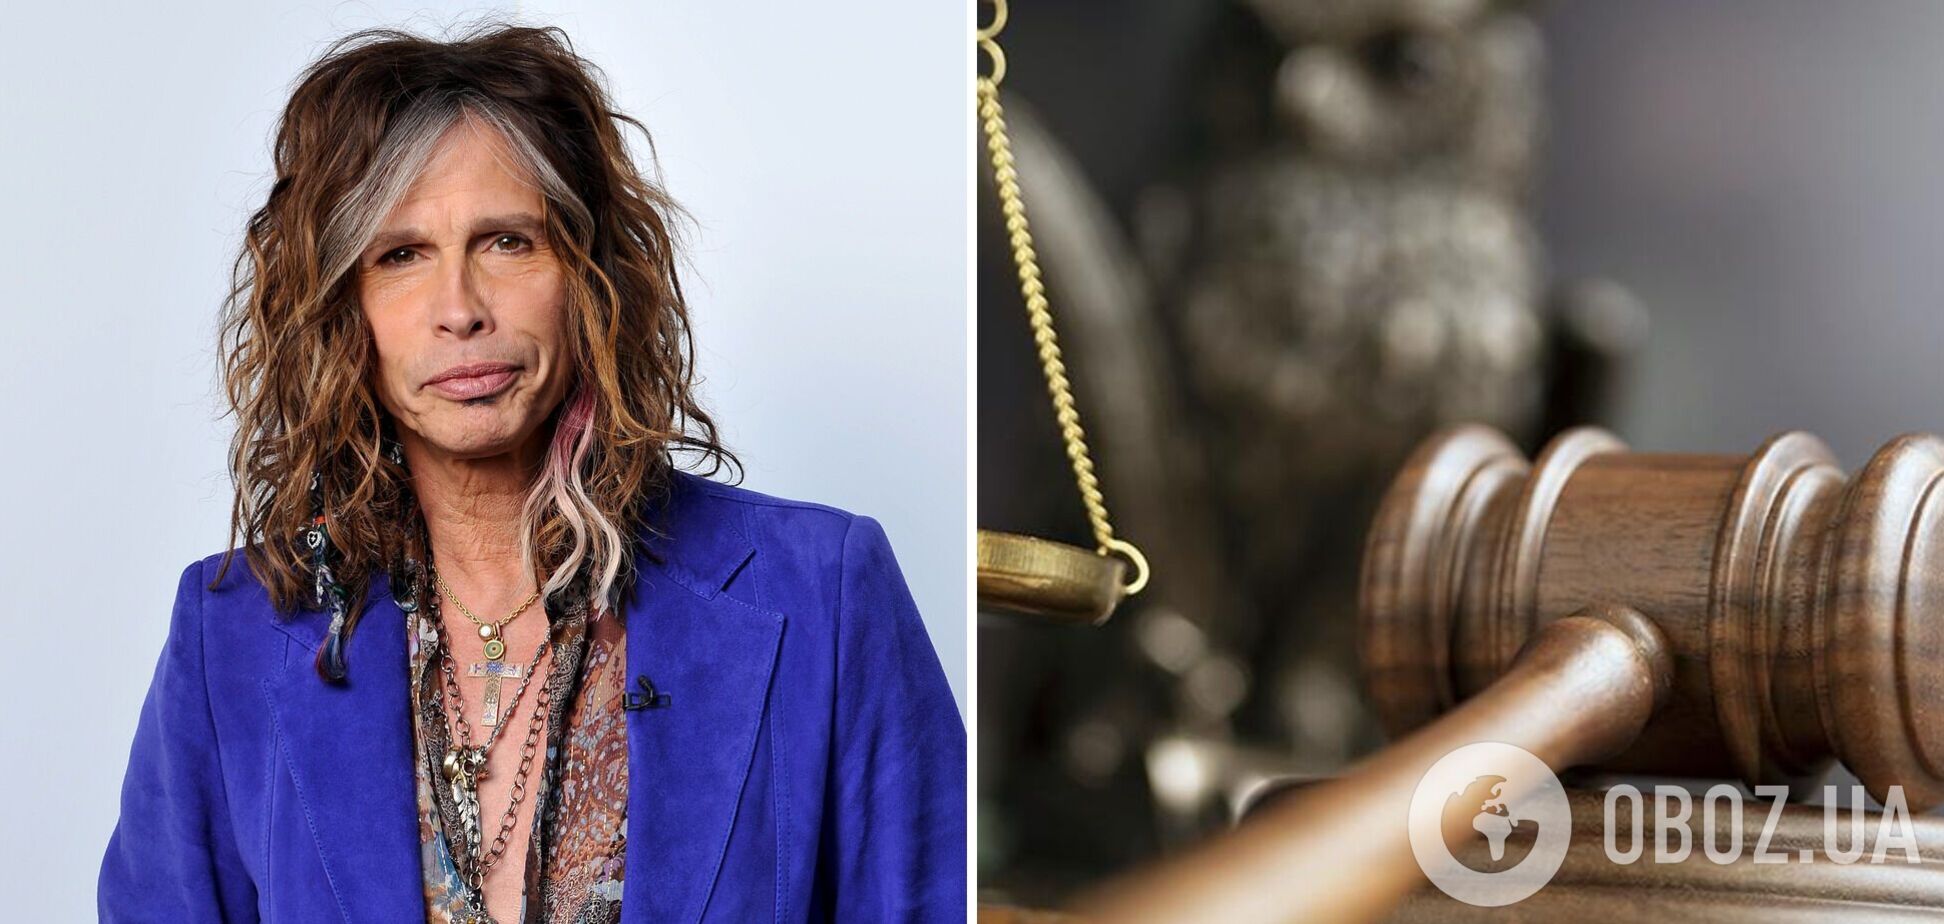 Солиста Aerosmith обвинили в сексуальном насилии над несовершеннолетней: детали скандала 